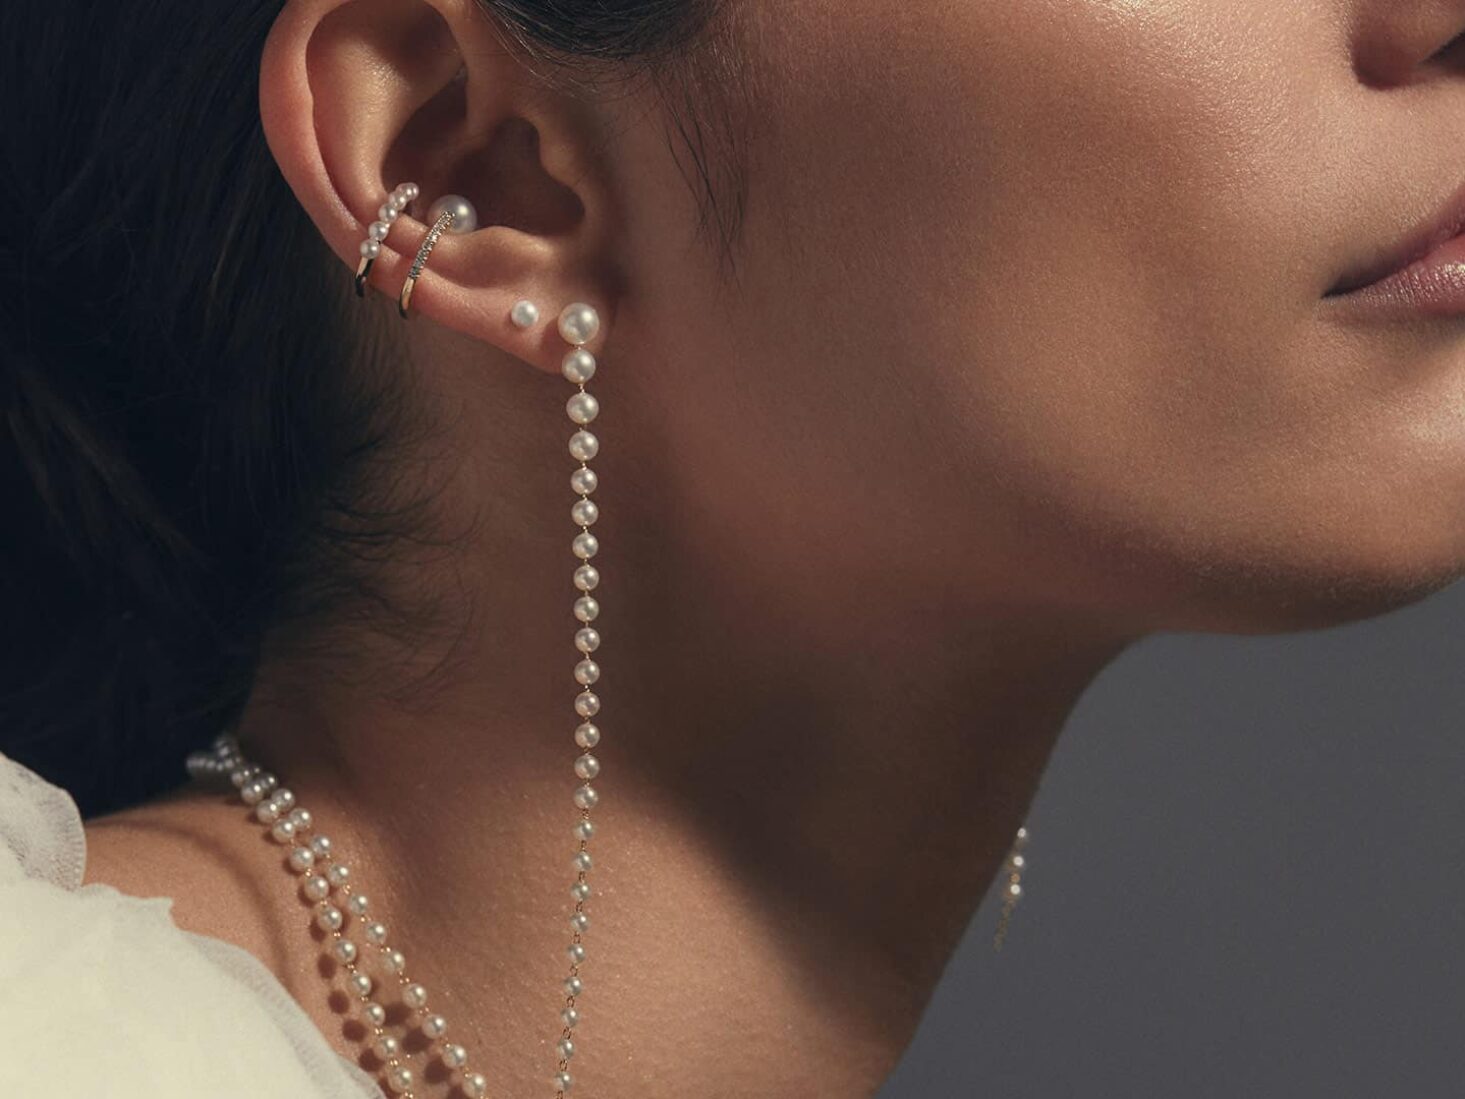 Queen Elizabeth's Pearl Earrings